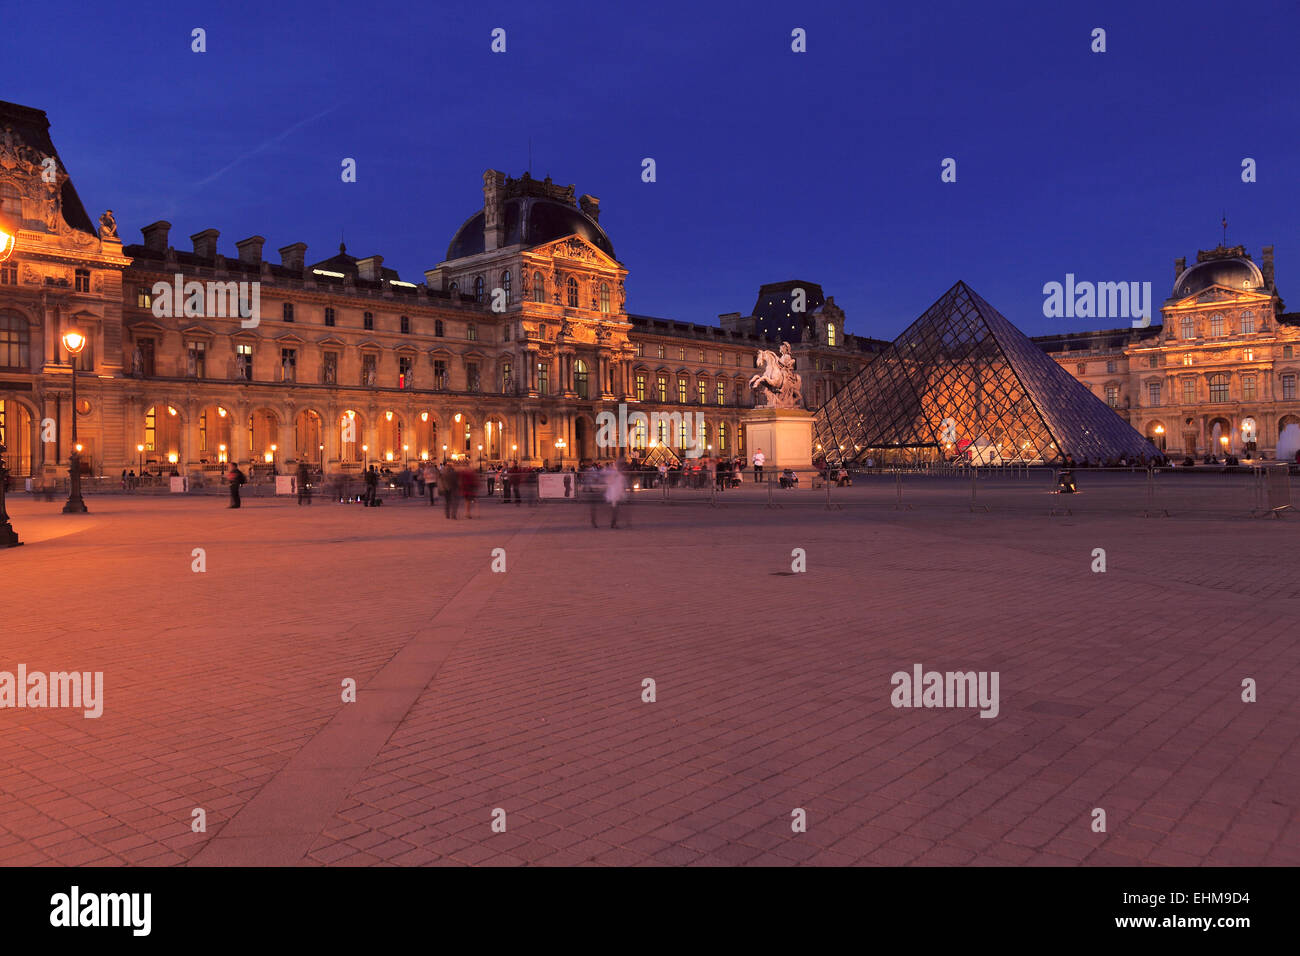 Vue de nuit sur le palais du Louvre et de la pyramide, Paris, France Banque D'Images